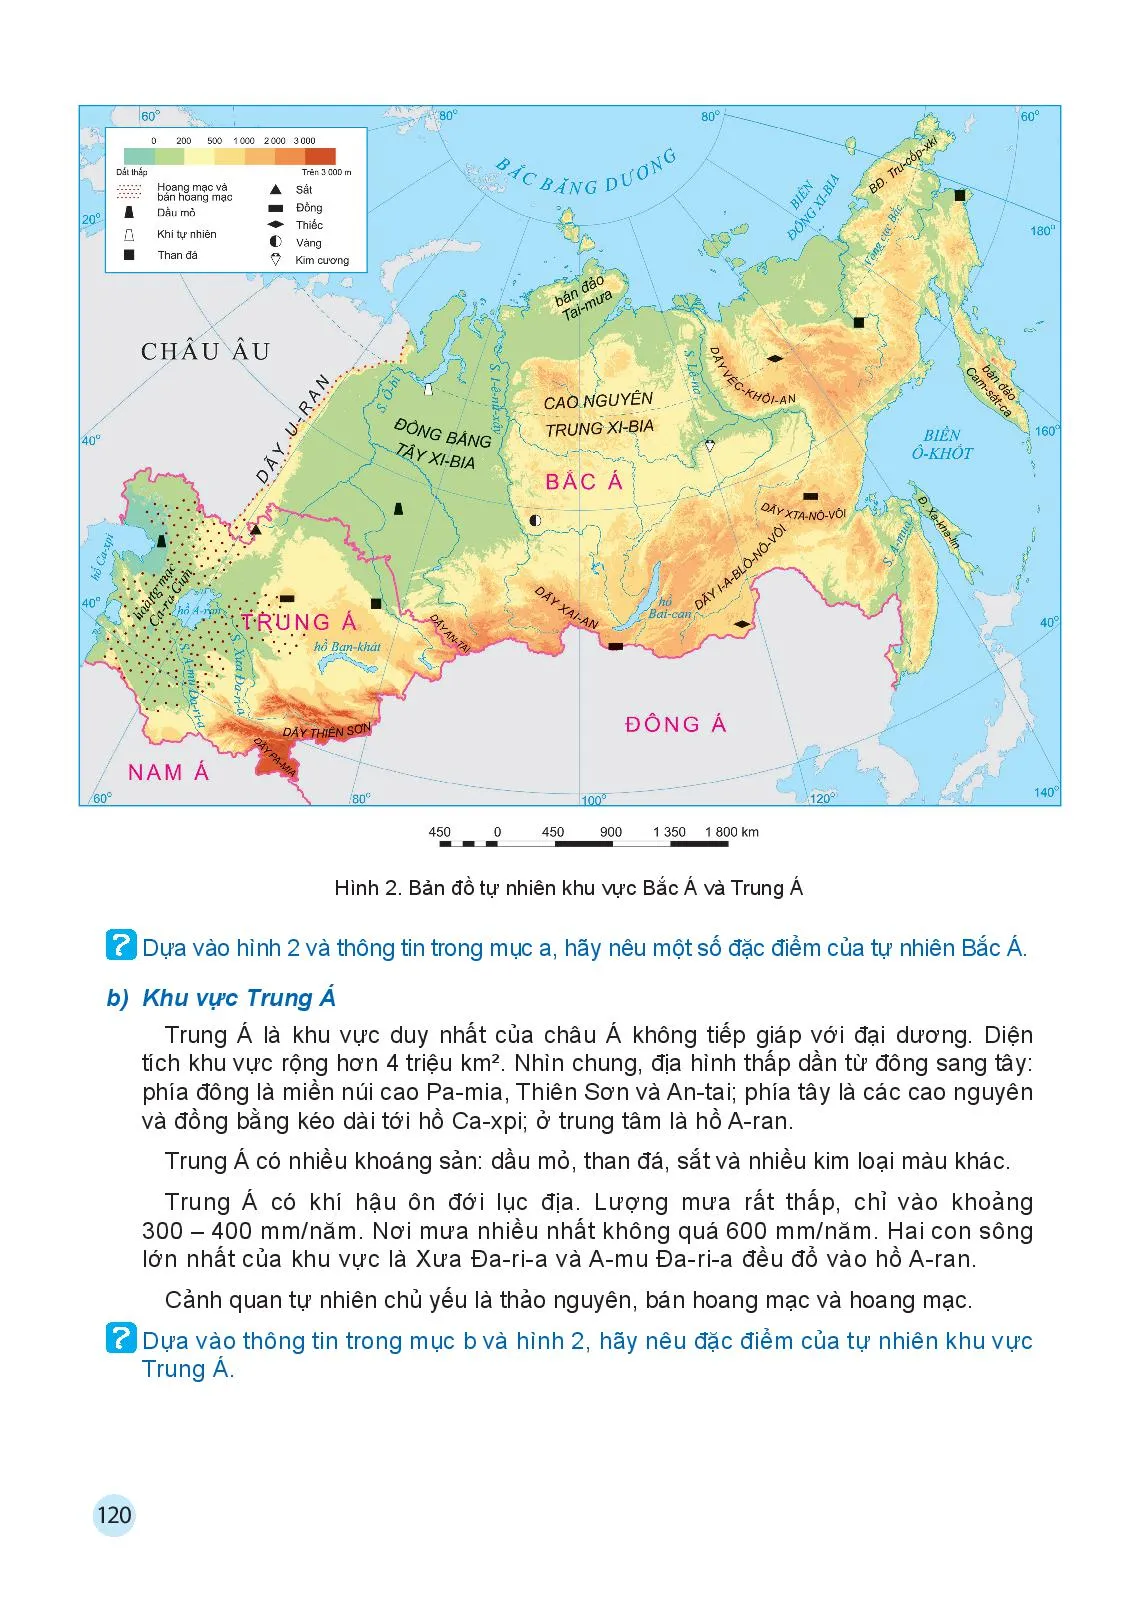 Bài 7 Bản đồ chính trị châu Á, các khu vực của châu Á